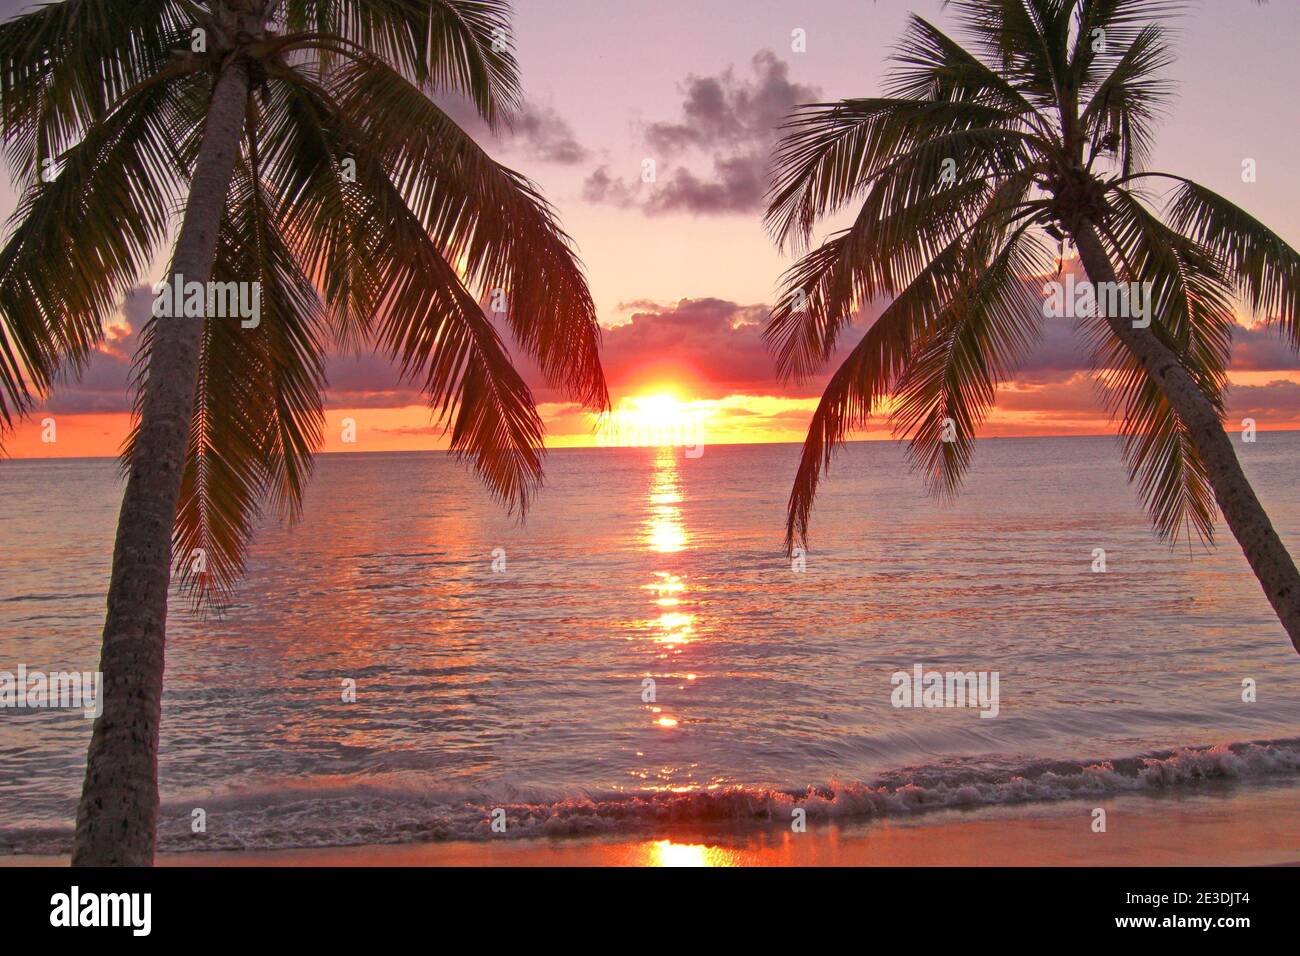 Plages de Martinique, coucher de soleil Stock Photo - Alamy